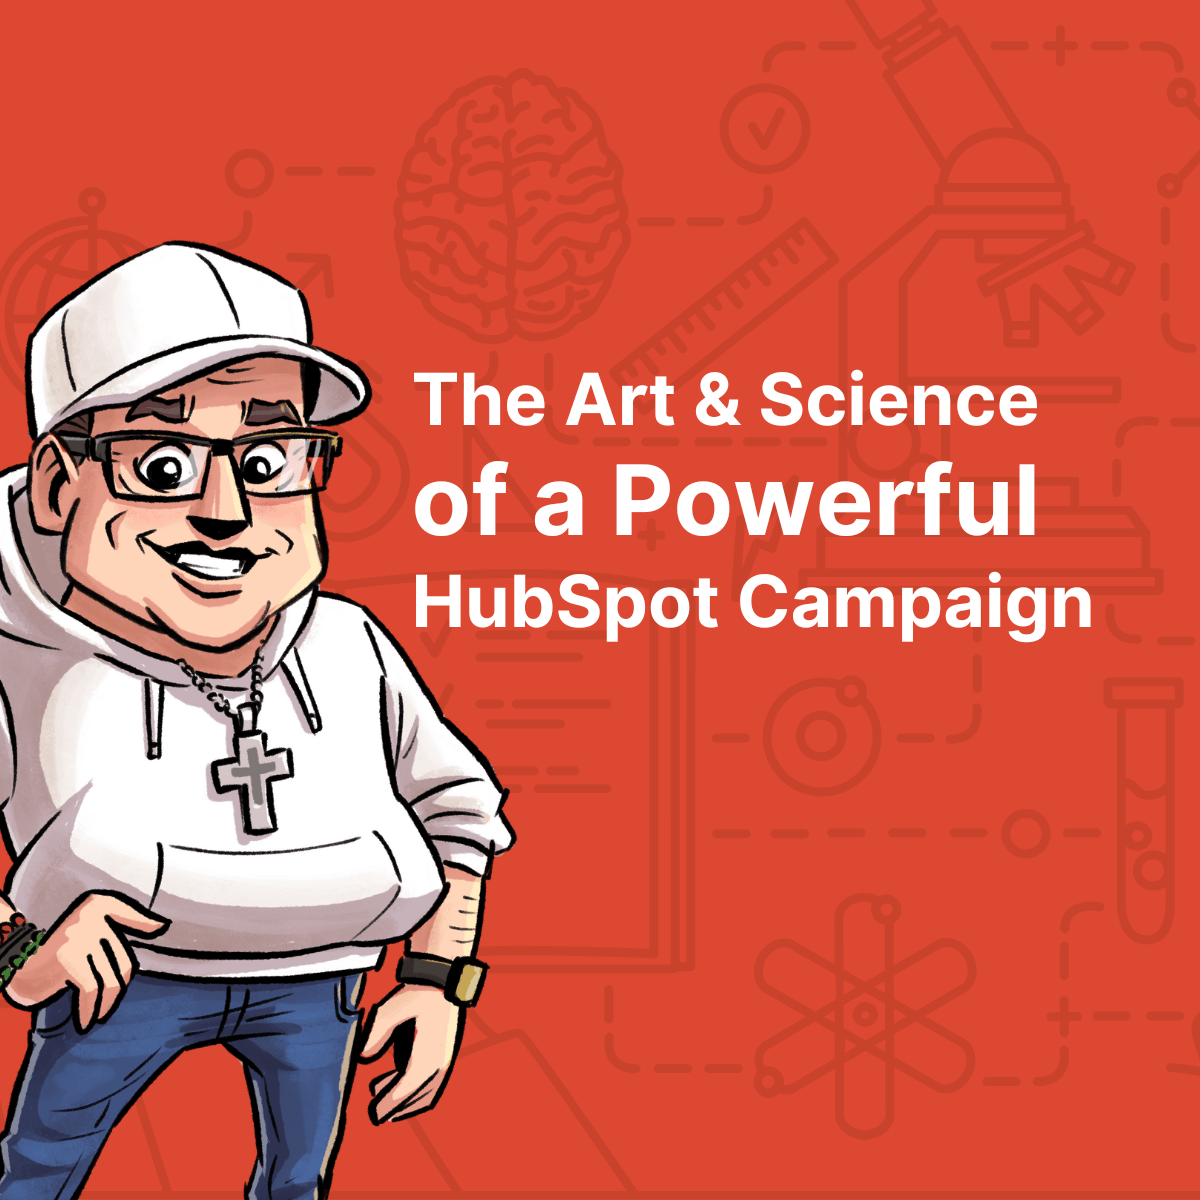 hubspot campaigns 101